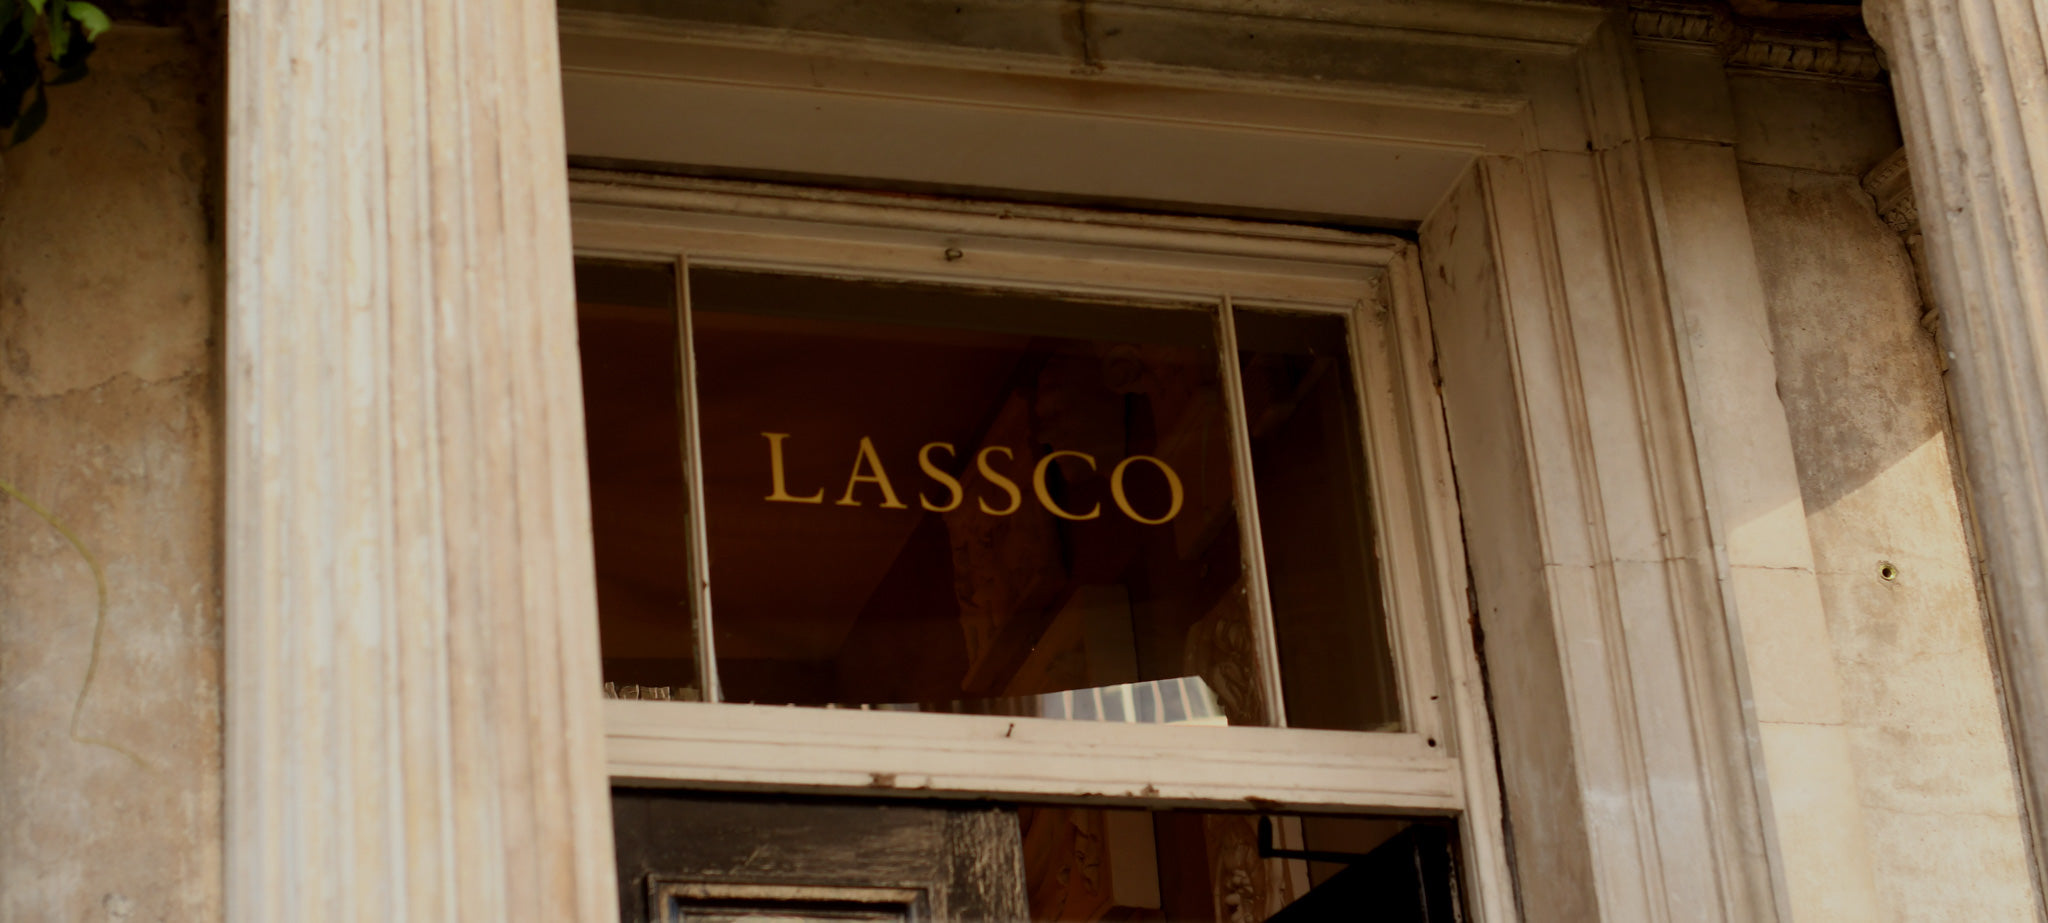 LASSCO - meet the mavericks of architectural antiques